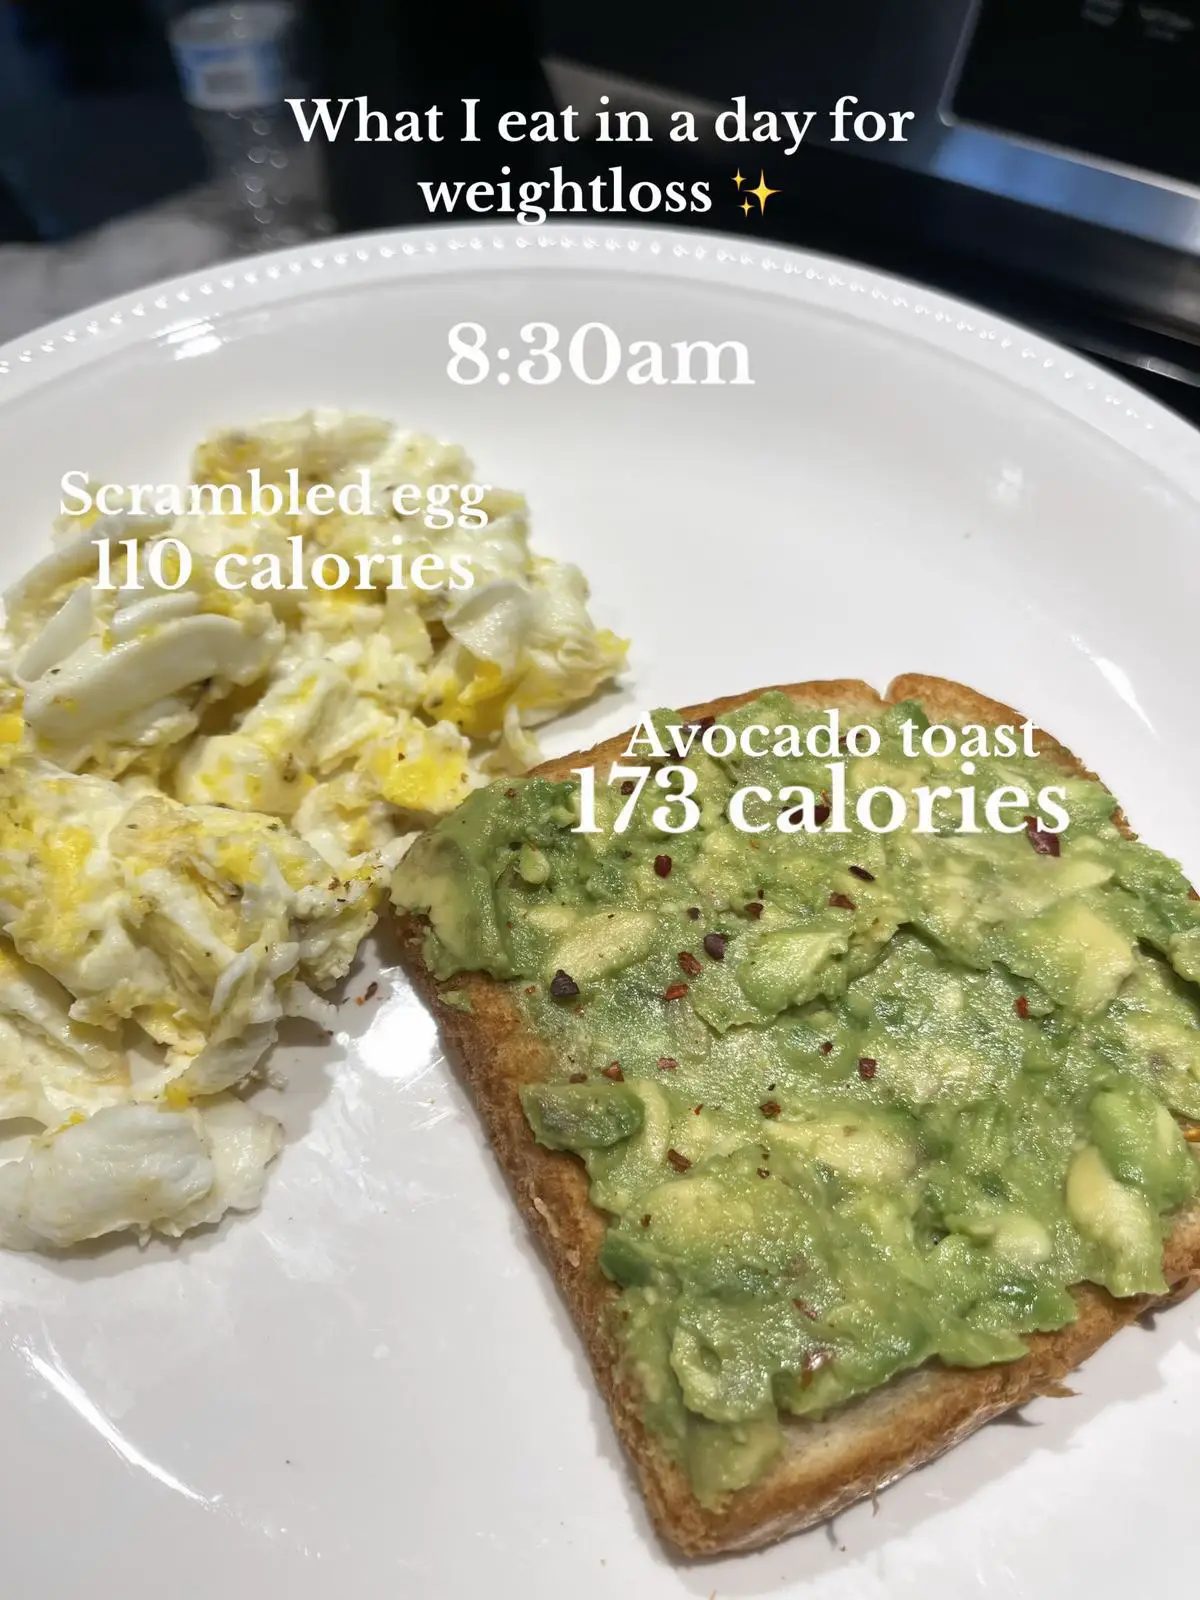 430 cal 45g protein weekend breakfast : r/Volumeeating